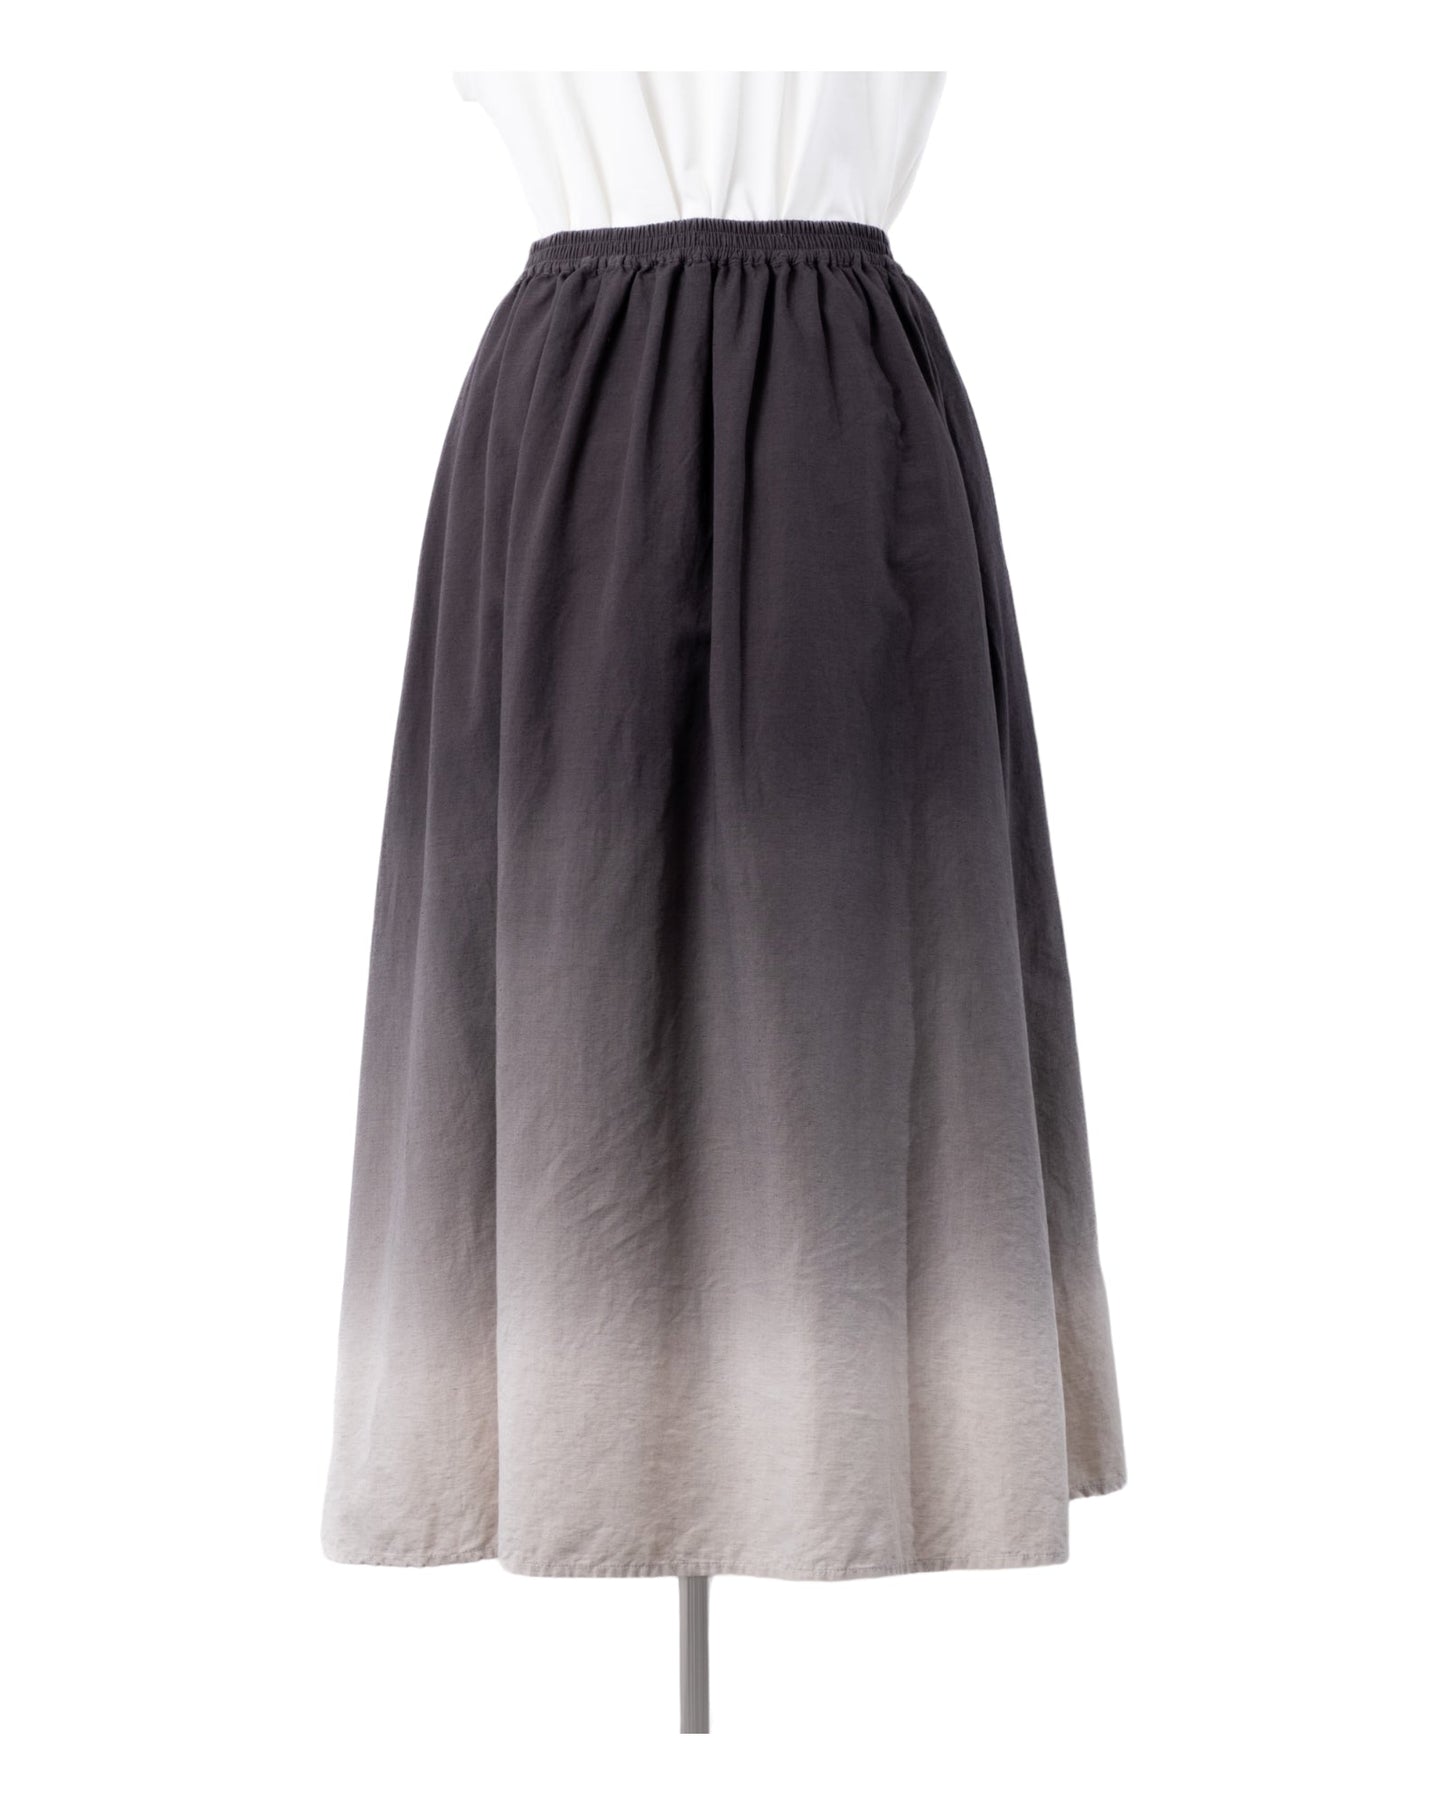 Organic Cotton × Linen Gradation Skirt #Charcoal